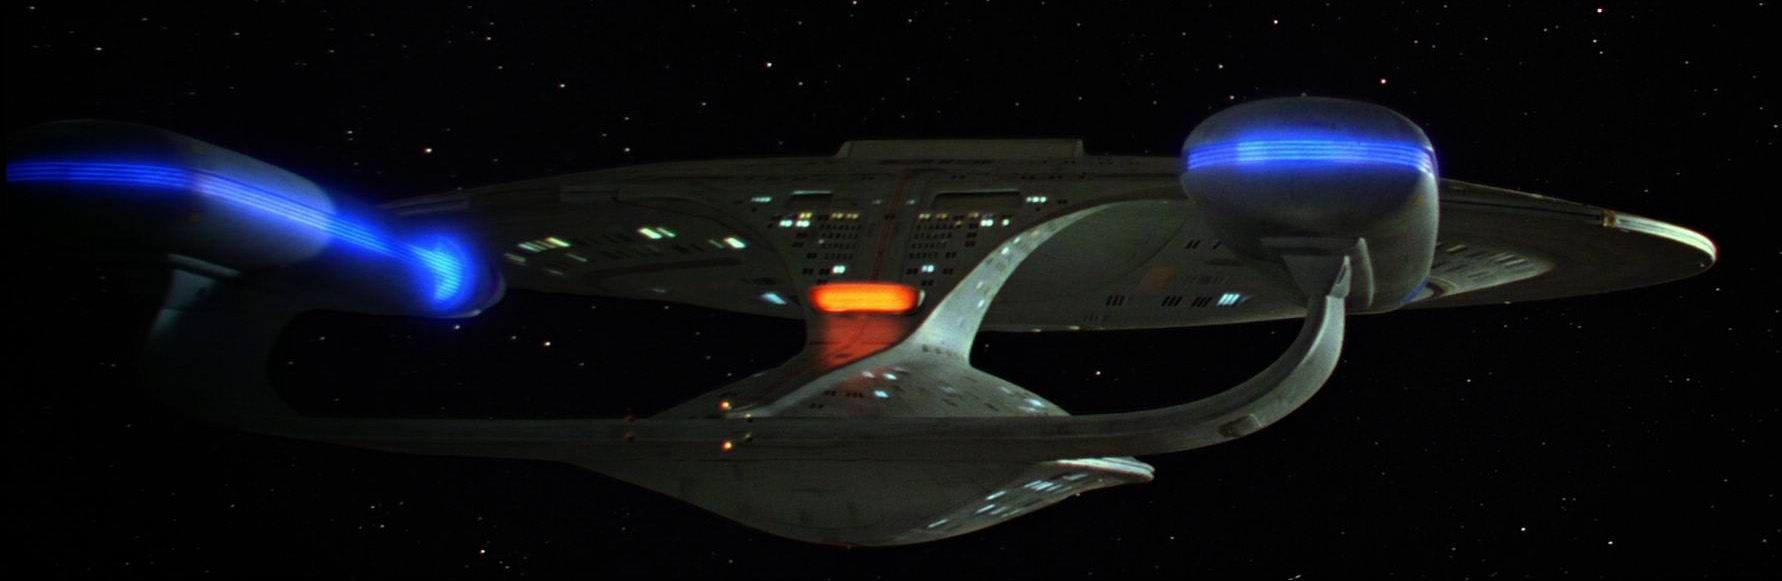 Galaxy_class_USS_Enterprise-D_aft_view